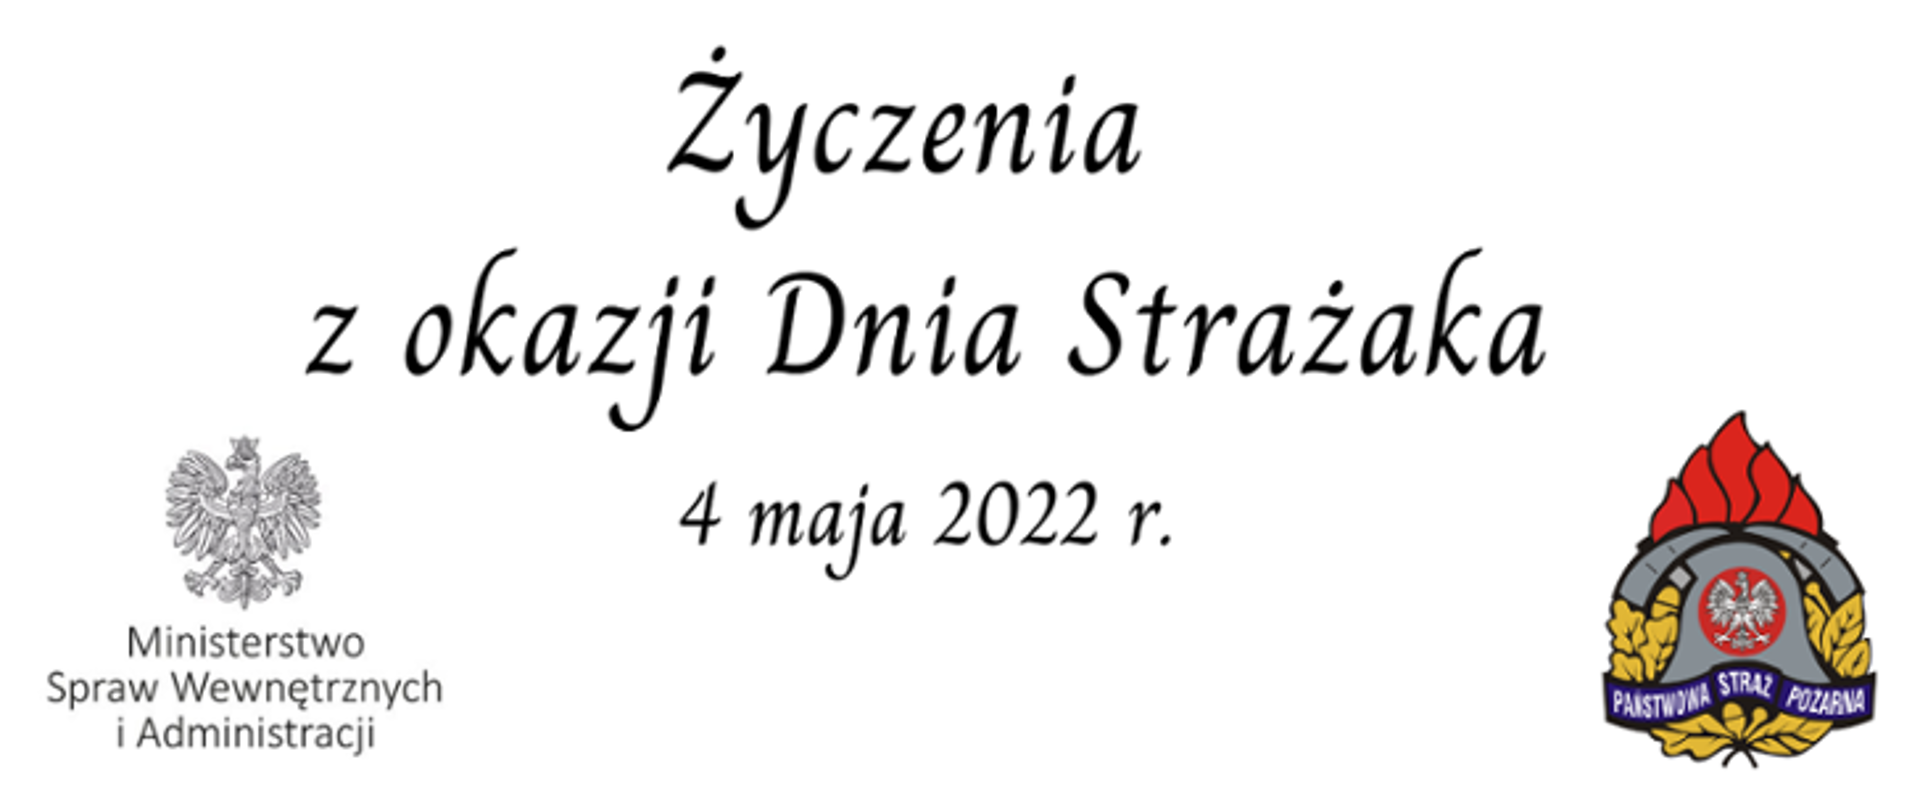 Życzenia z okazji Dnia Strażaka 2022